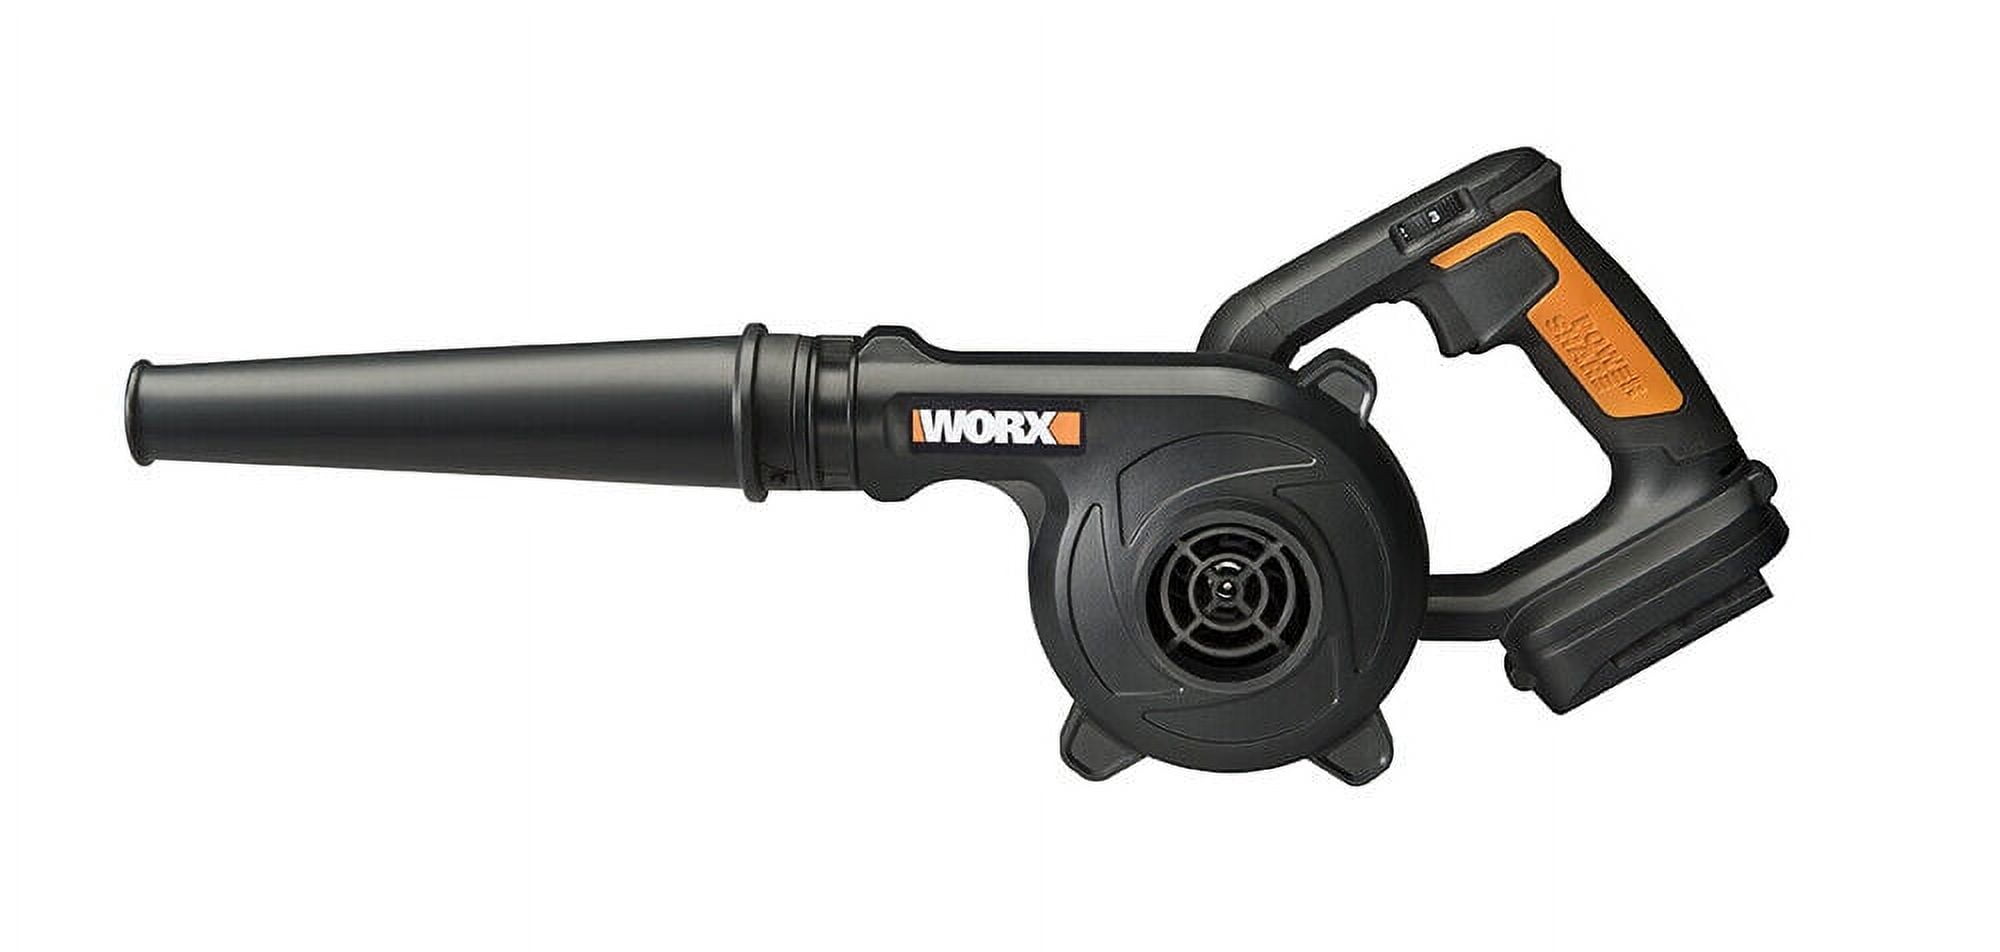 Worx 20V Cordless Jobsite Blower w/Battery 